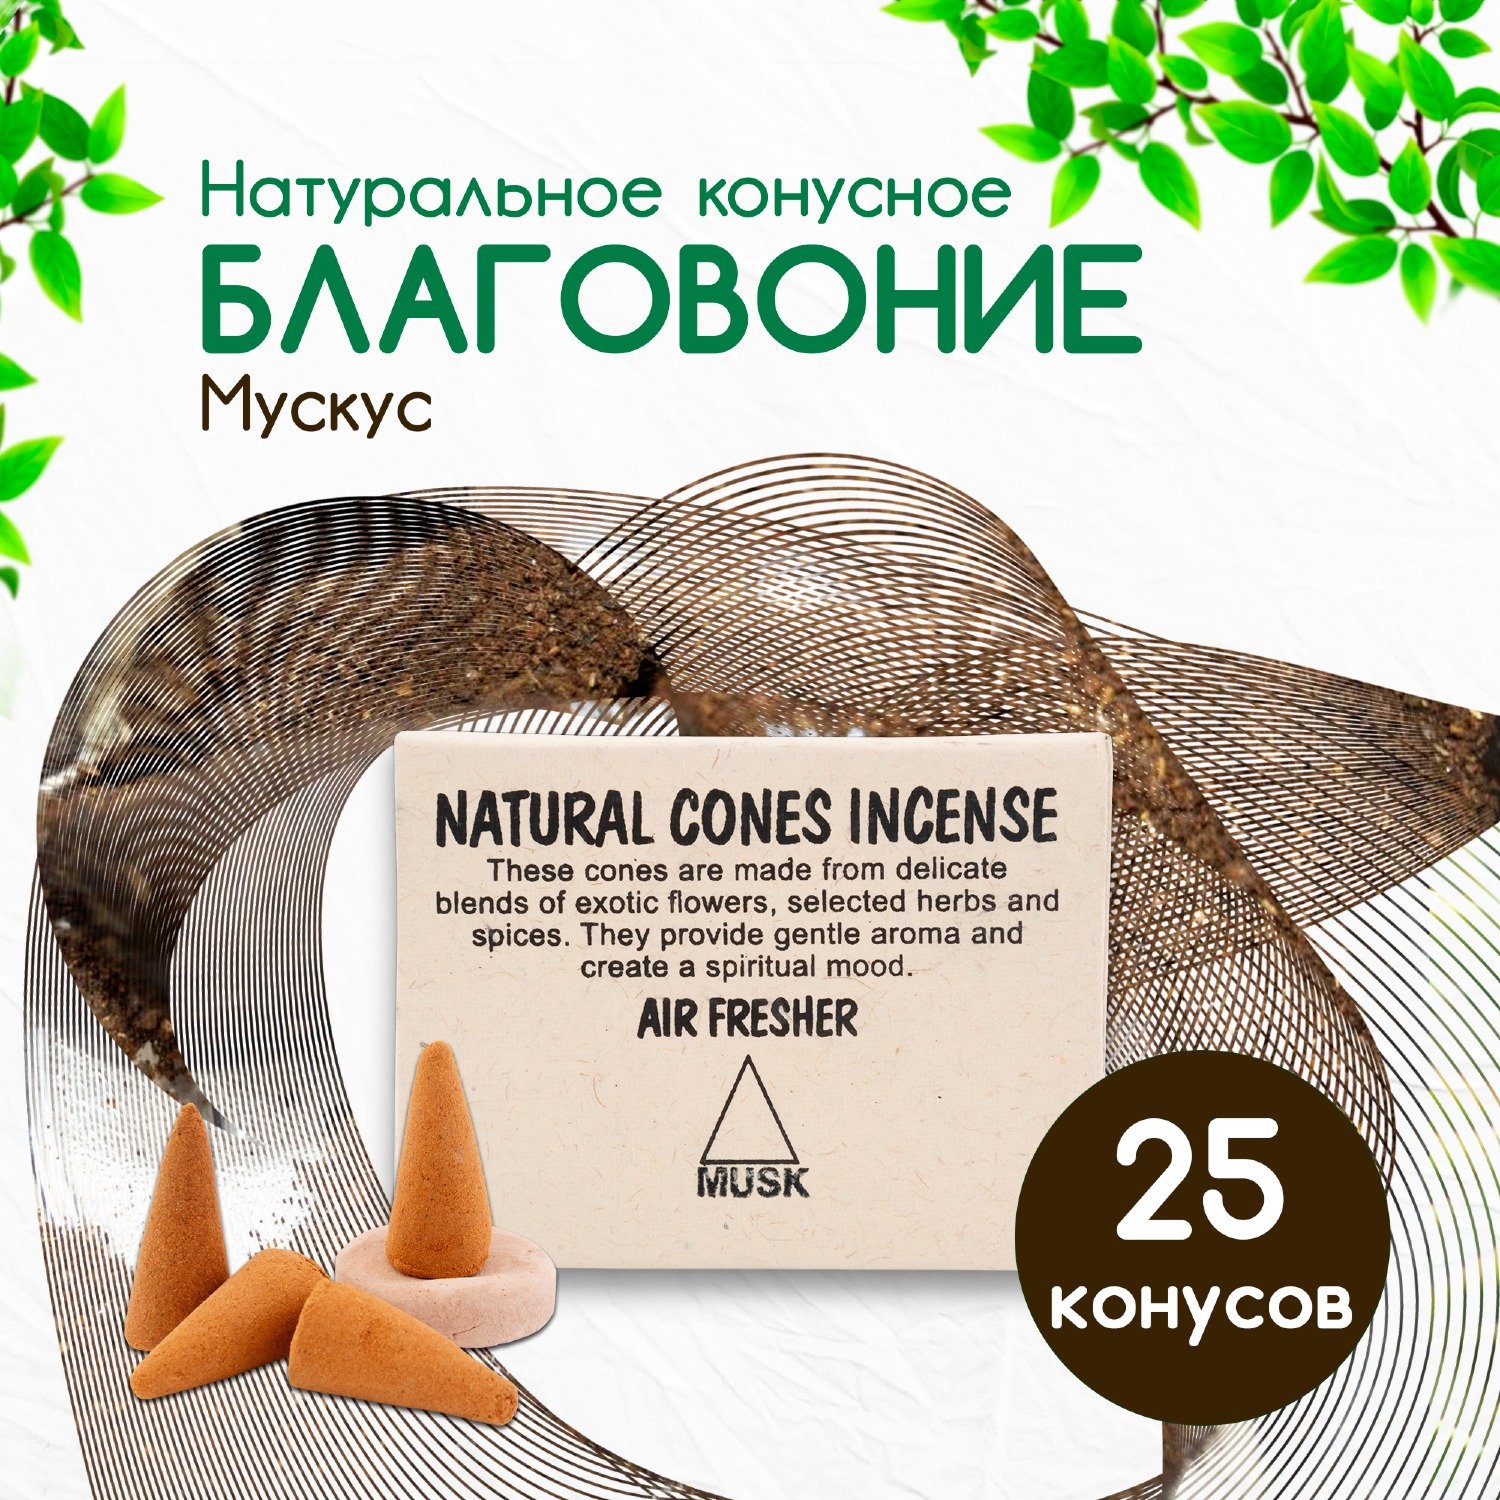 Natural Cones Incense "Musk" (Натуральное конусное благовоние "Мускус"), 25 конусов по 3 см. 